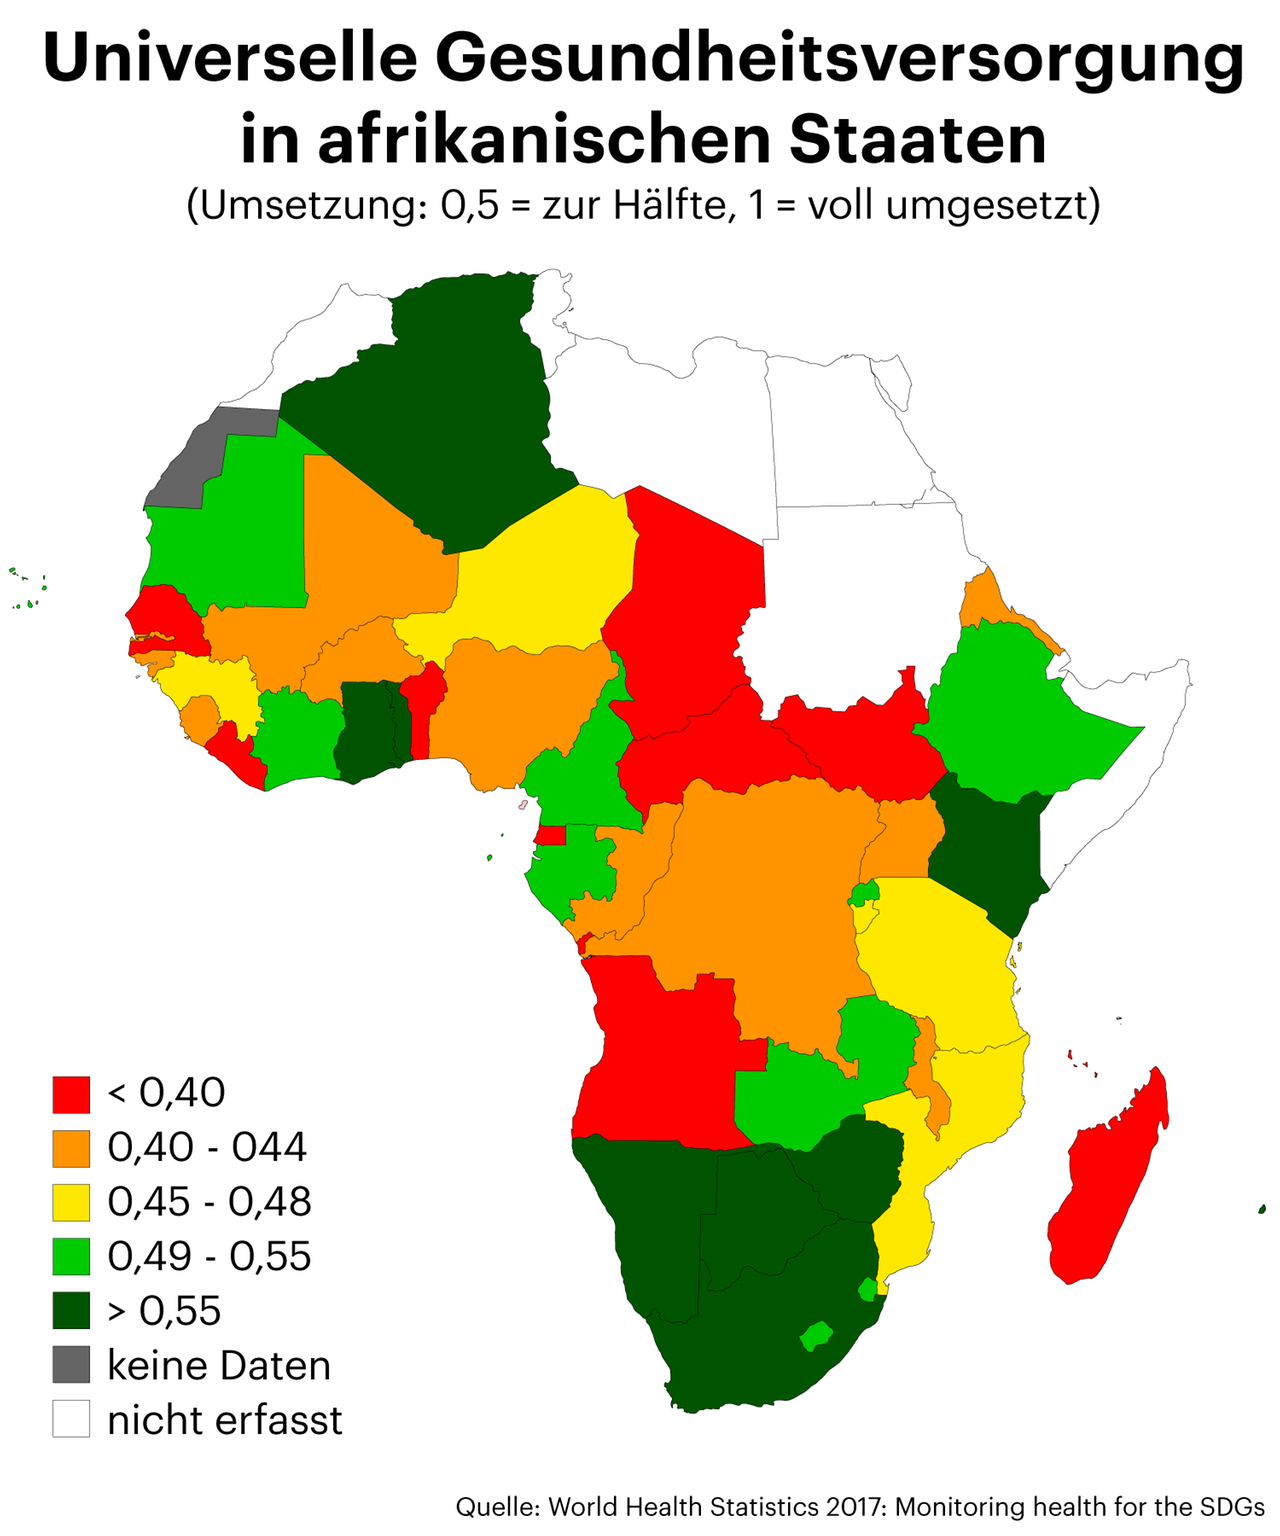 Universelle Gesundheitsversorgung in afrikanischen Staaten